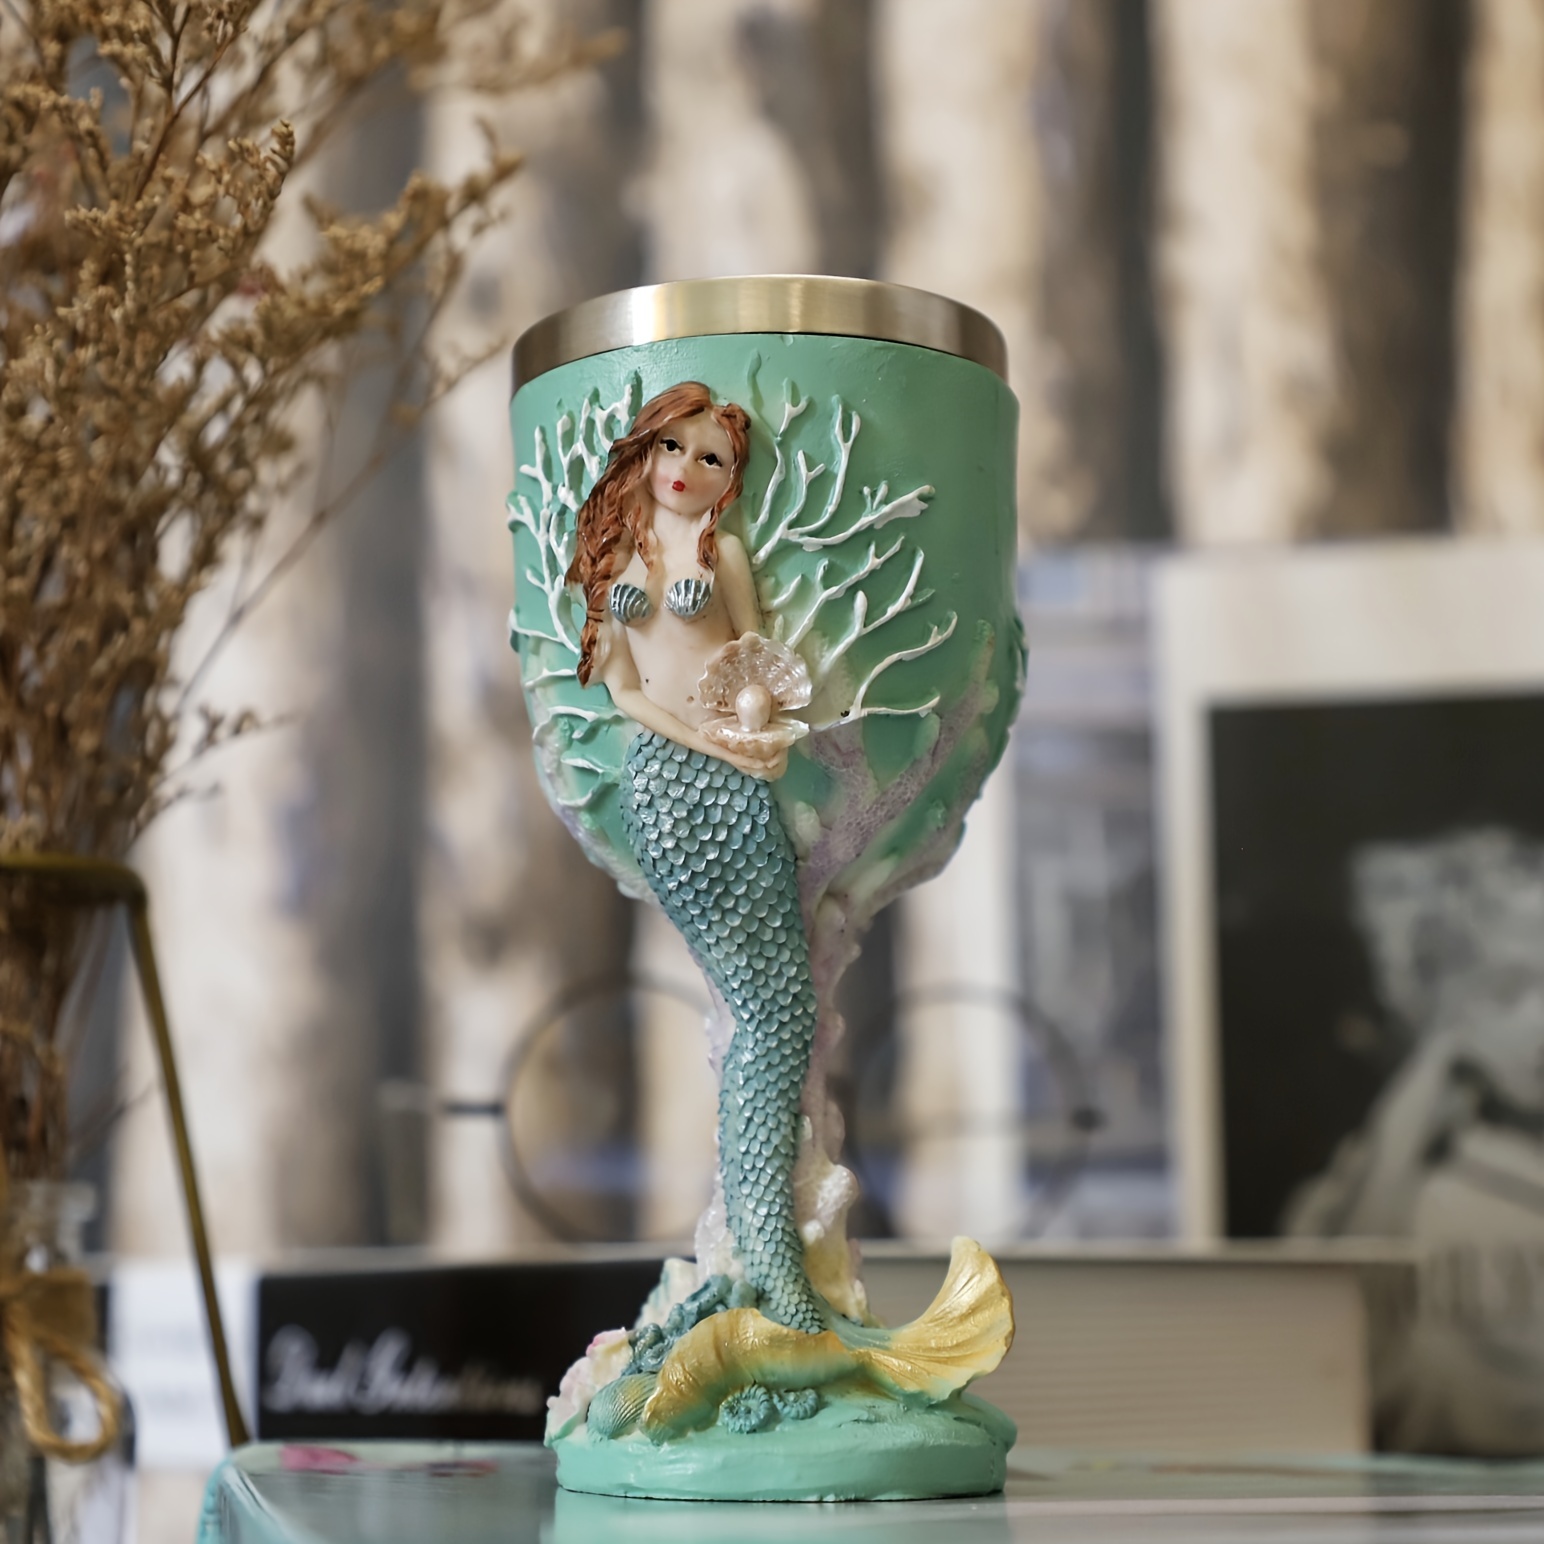 Mermaid Goblet